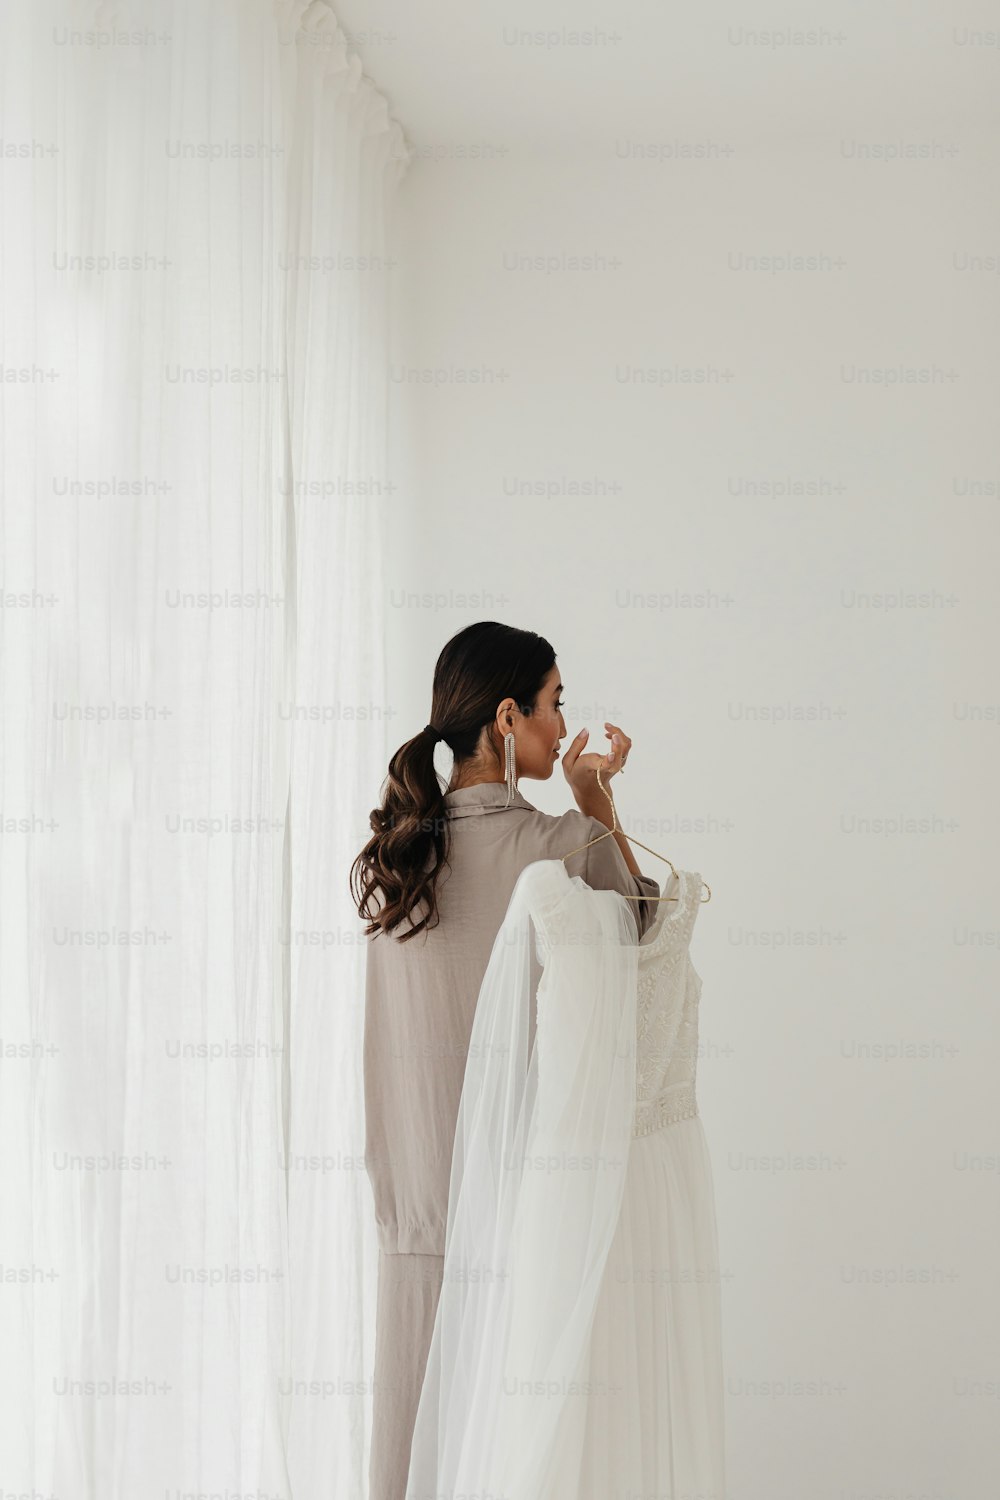 Una mujer parada frente a una cortina blanca sosteniendo un vestido